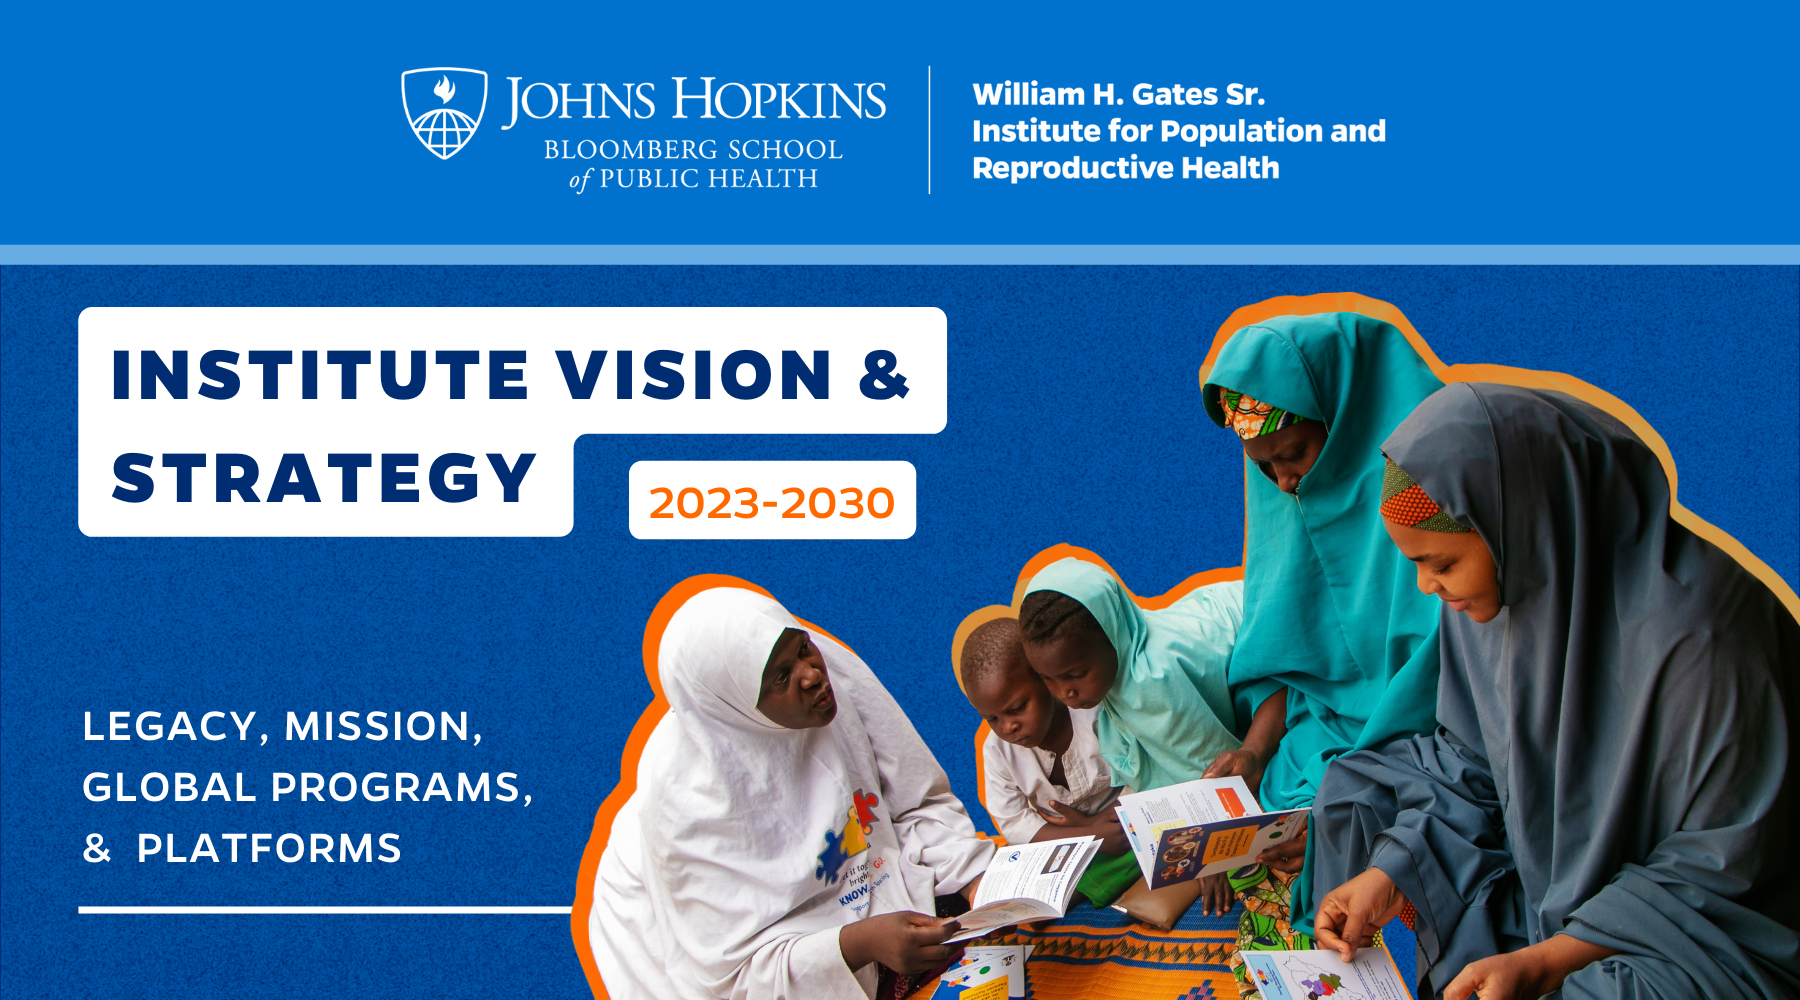 El Instituto William H. Gates Sr. de Población y Salud Reproductiva presenta una estrategia renovada hasta 2030